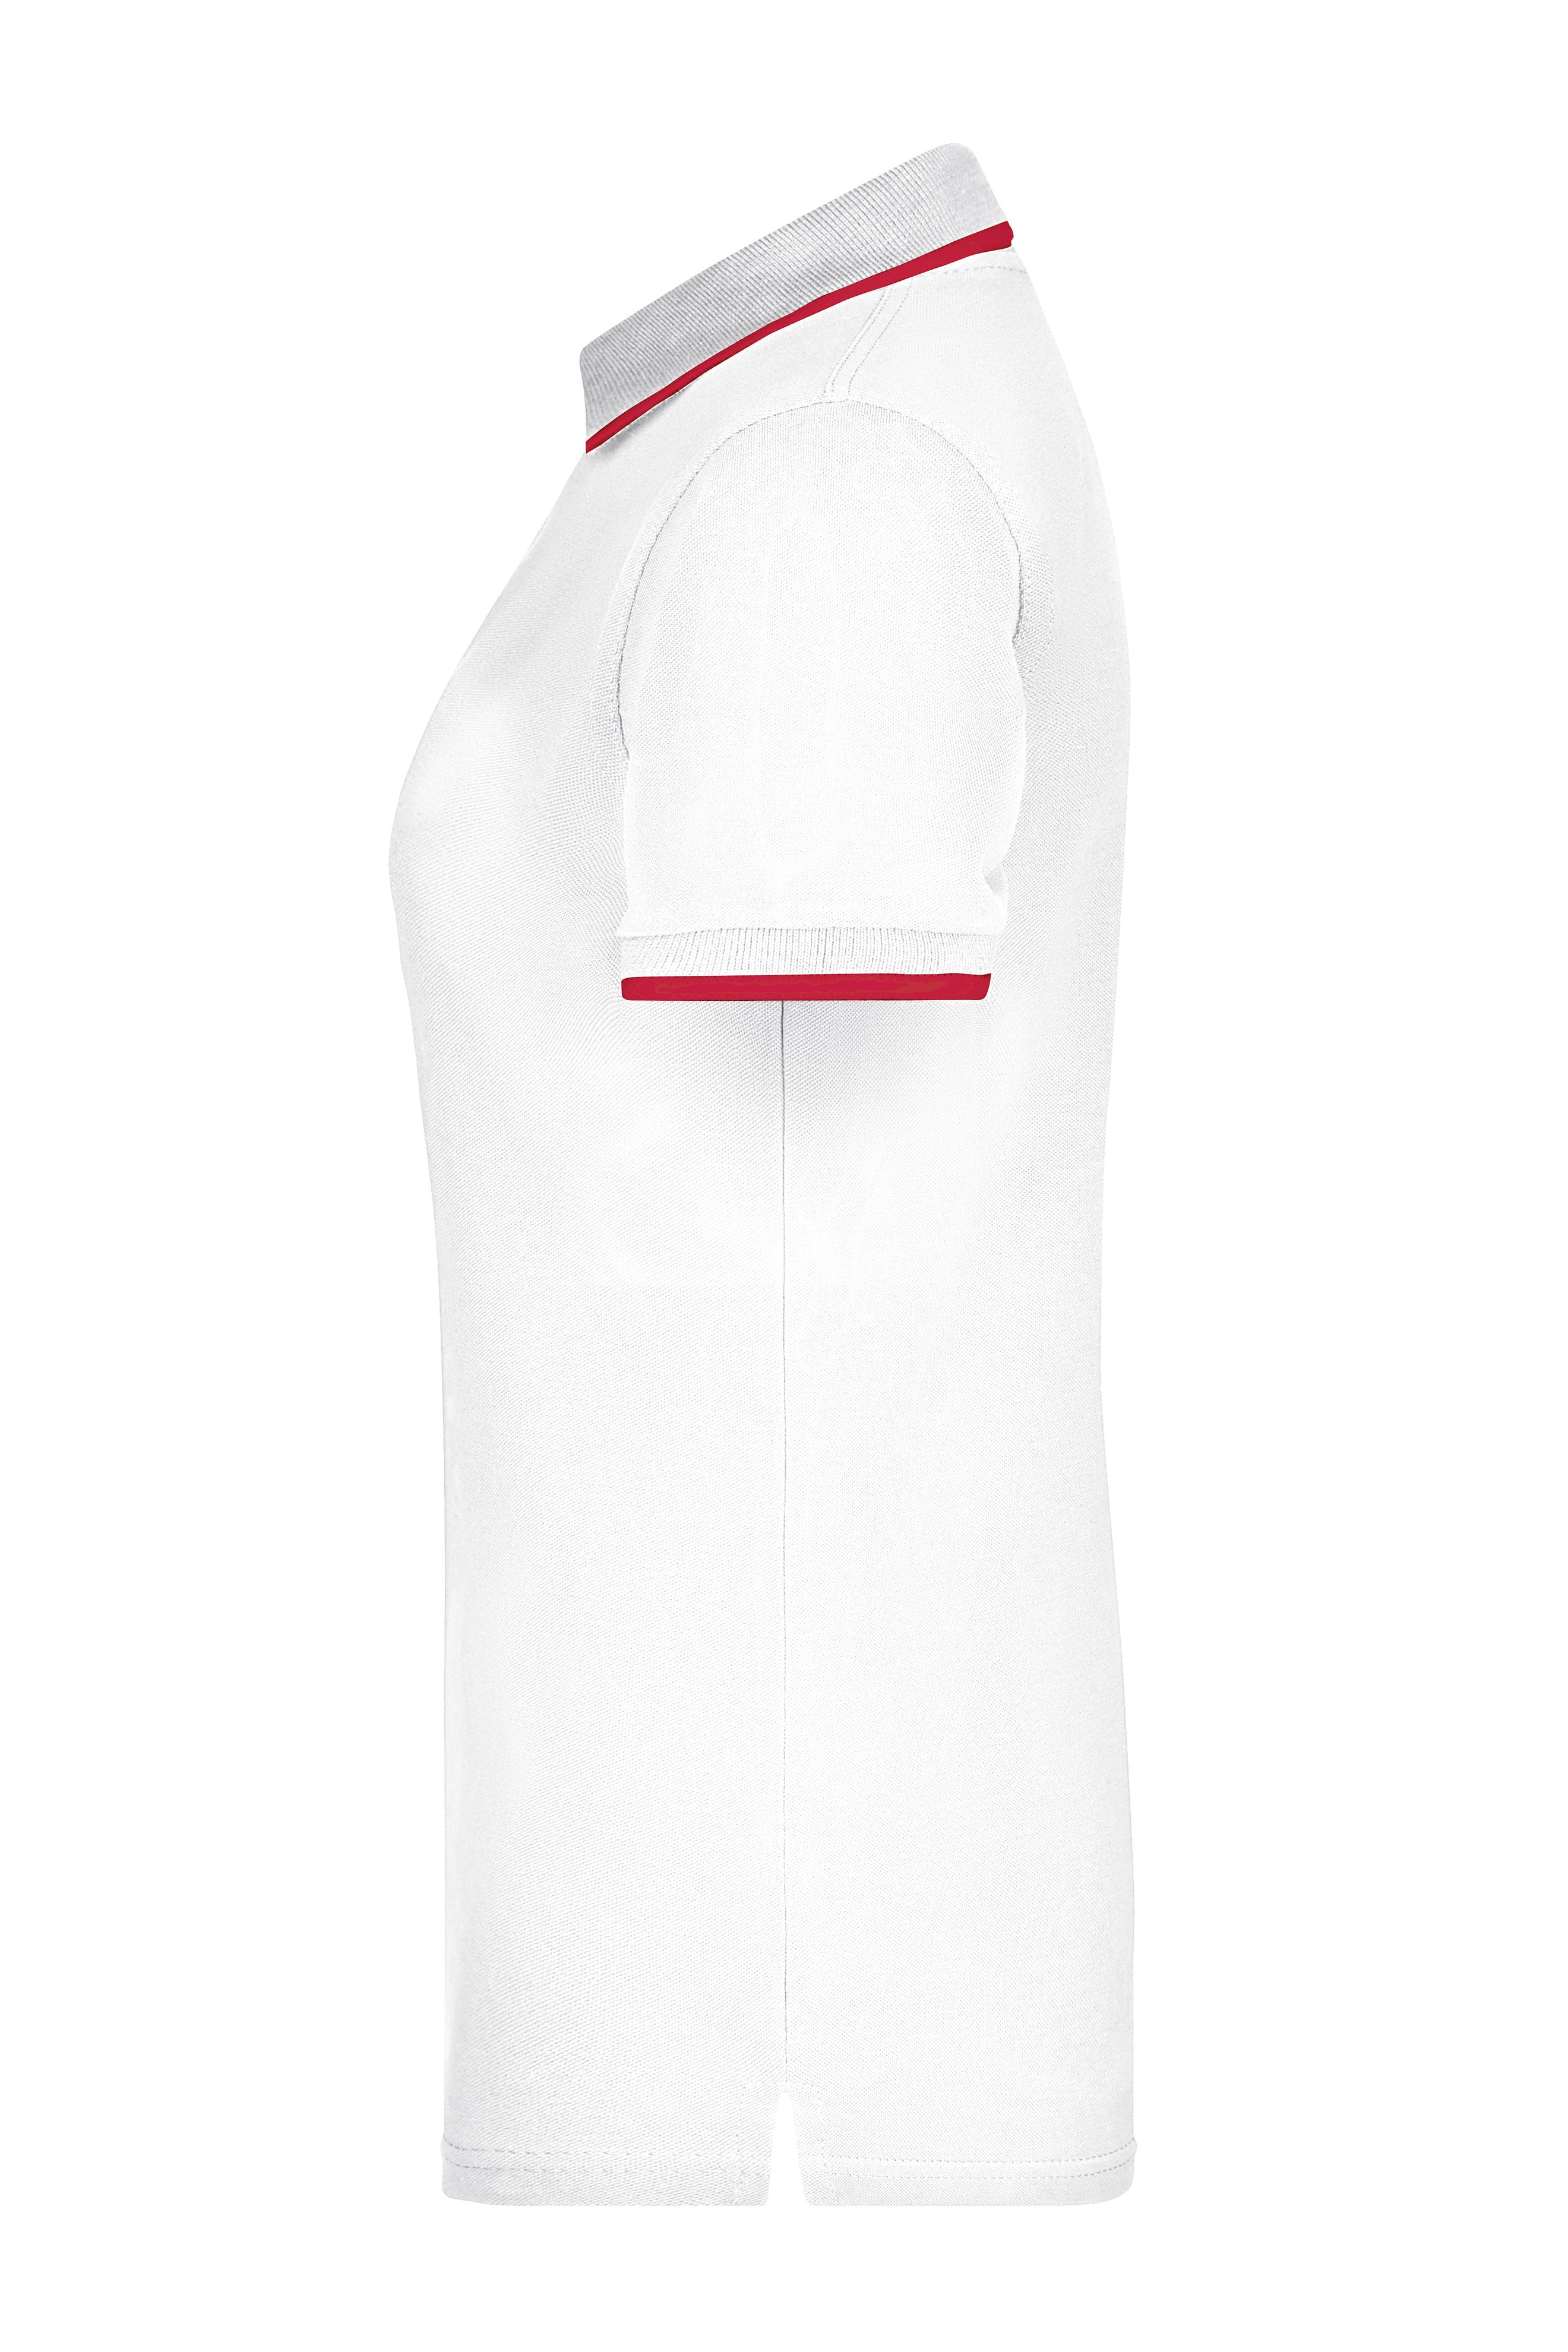 Ladies' Polo Tipping JN934 Hochwertiges Piqué-Polohemd mit Kontraststreifen